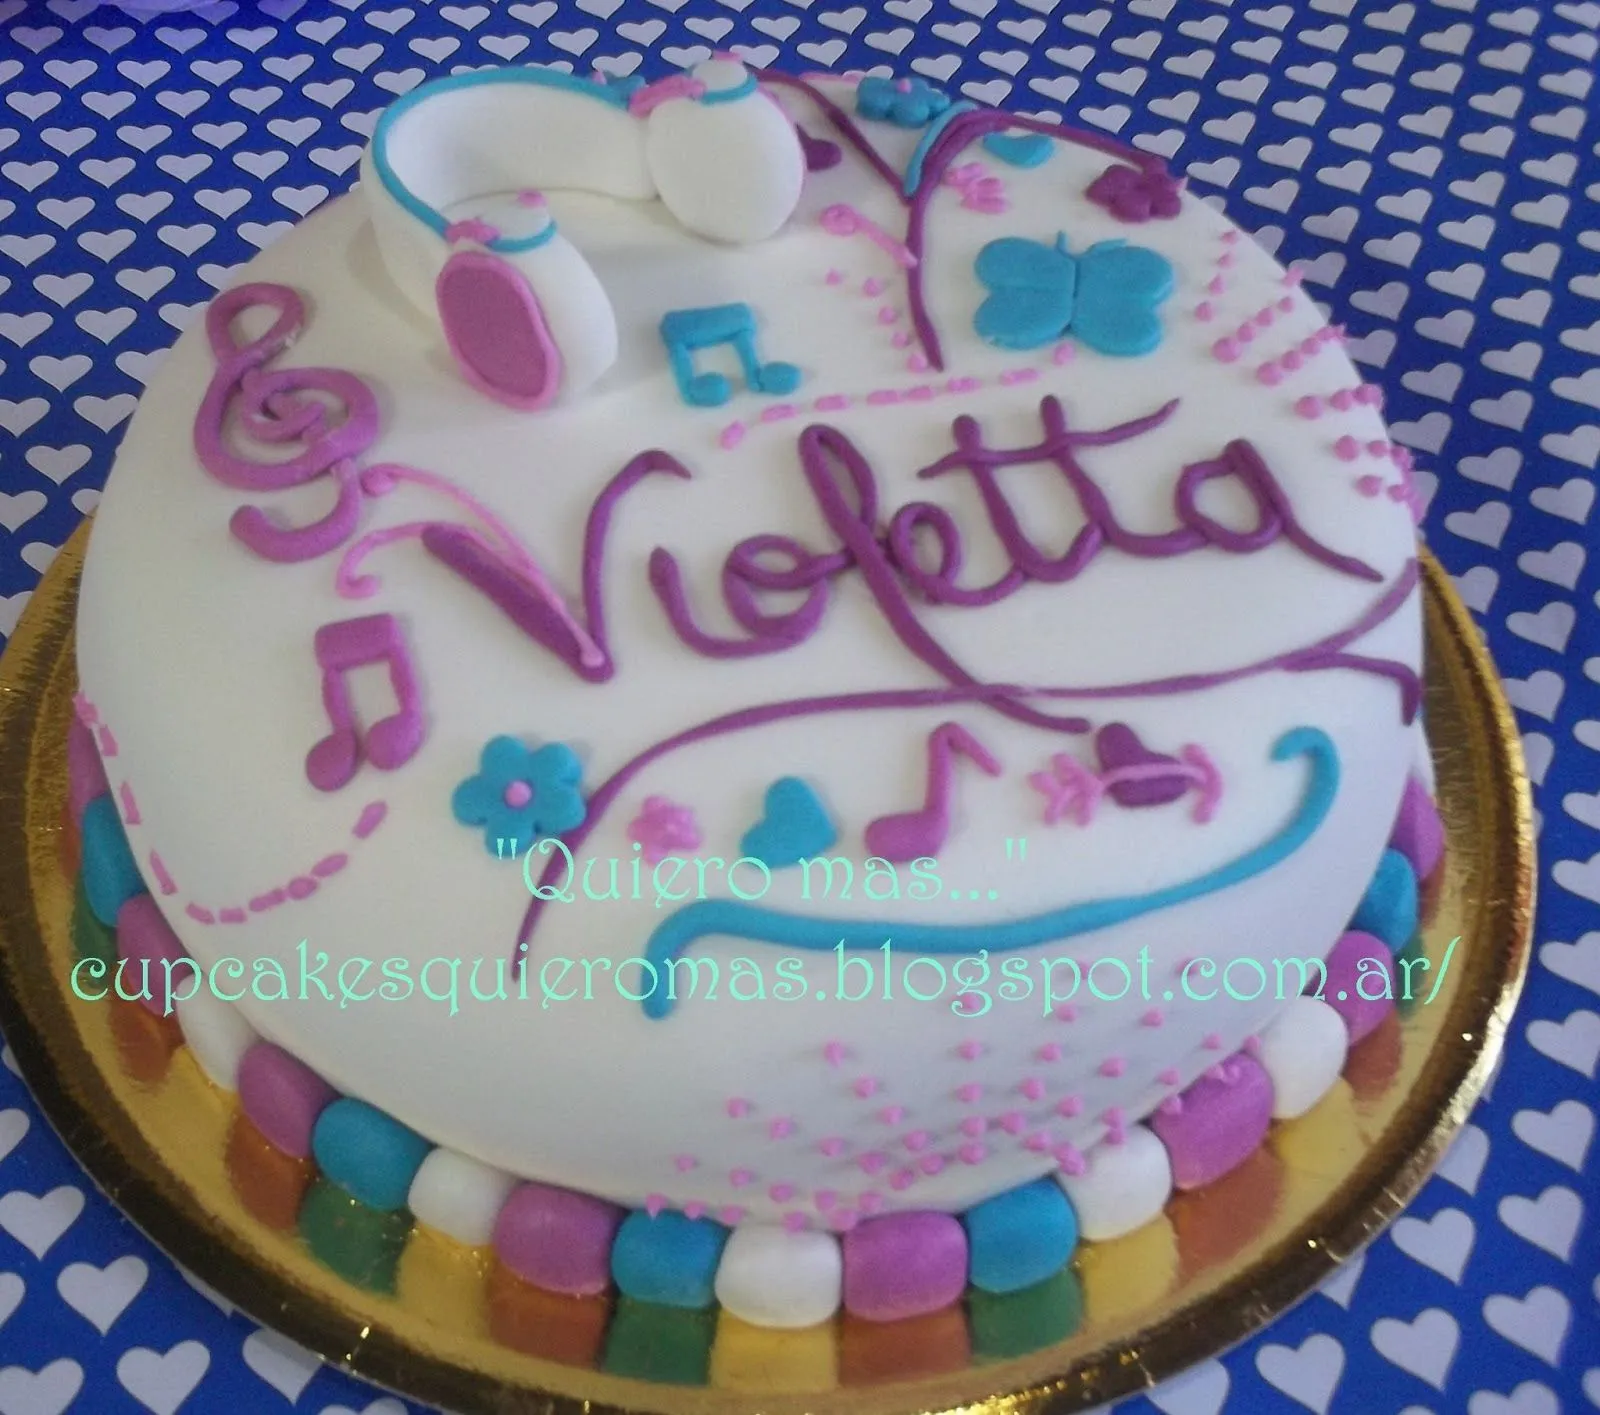 Delicias Quiero mas...: Tortas Violetta de Disney